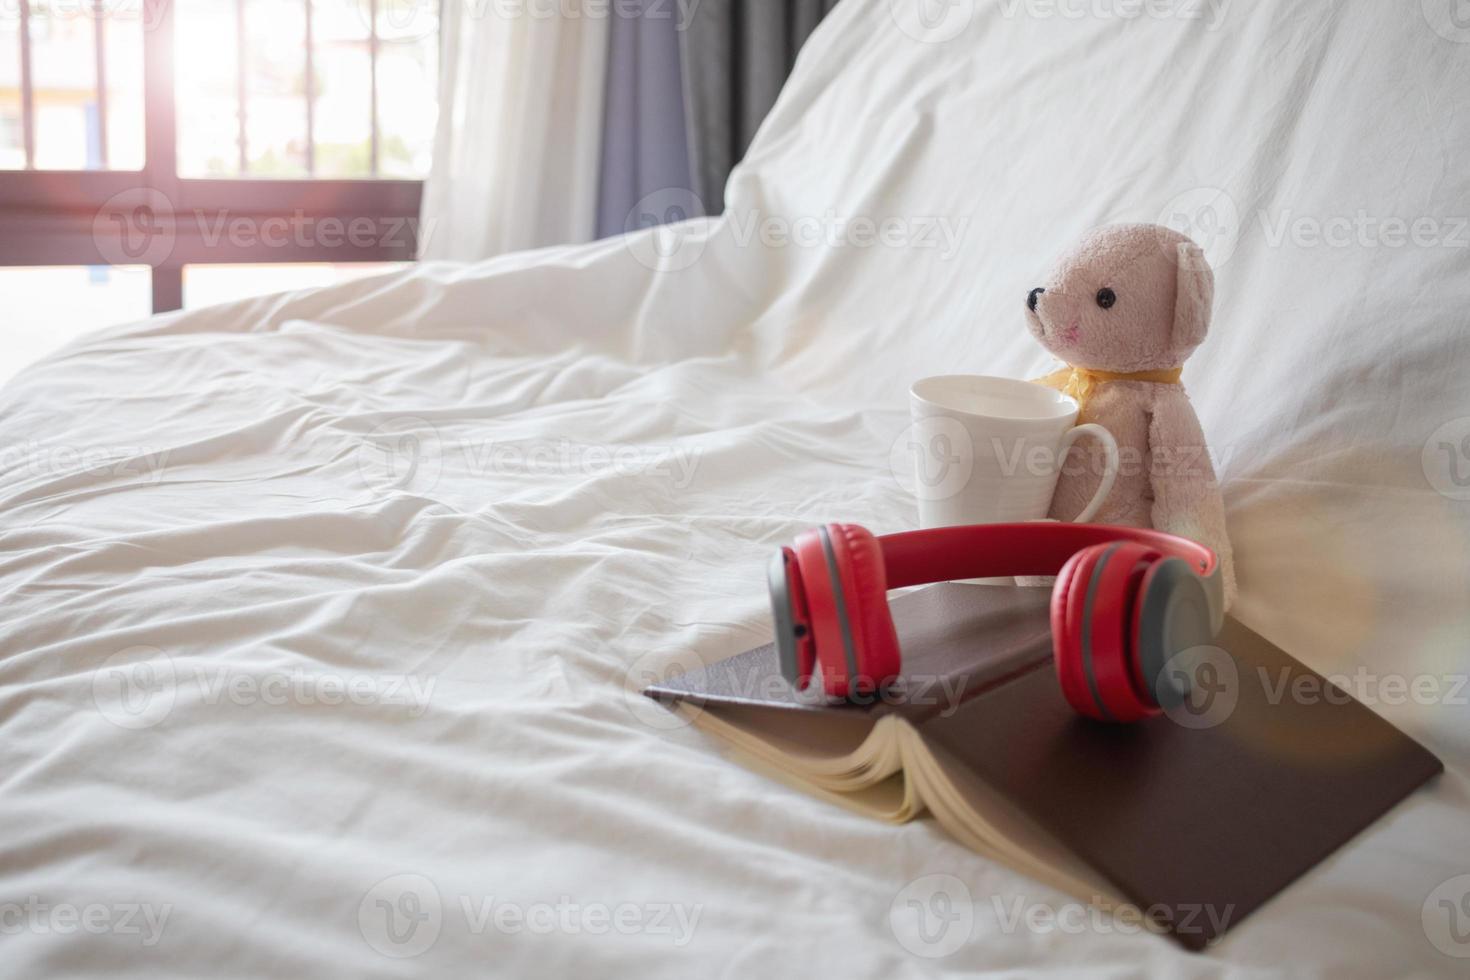 um fone de ouvido vermelho é colocado em um livro perto de um ursinho de pelúcia rosa na cama pela manhã, definido para um descanso confortável. um par de fones de ouvido e um livro repousa sobre a roupa de cama branca do quarto. foto